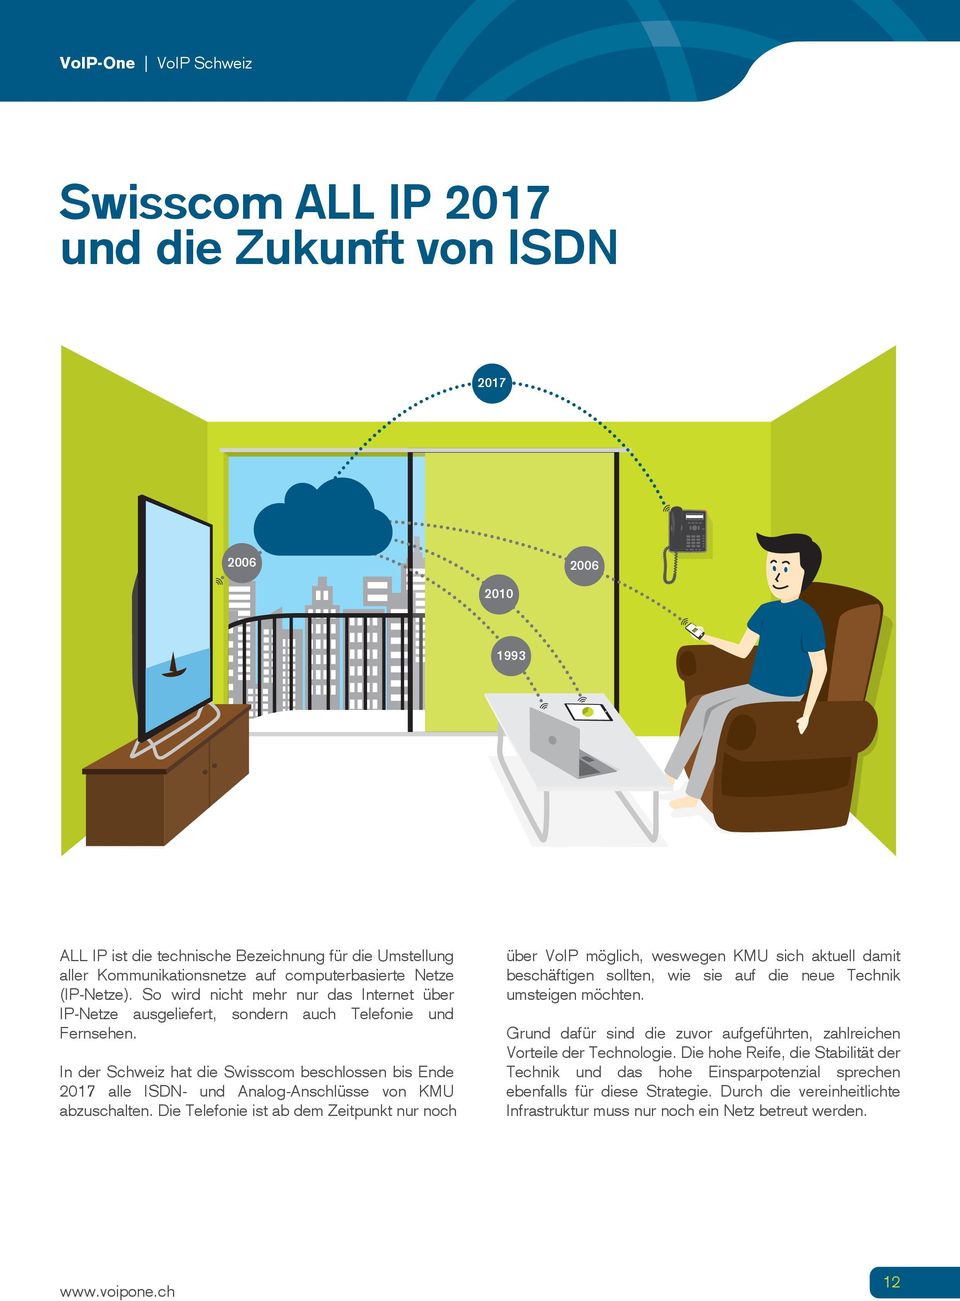 In der Schweiz hat die Swisscom beschlossen bis Ende 2017 alle ISDN- und Analog-Anschlüsse von KMU abzuschalten.